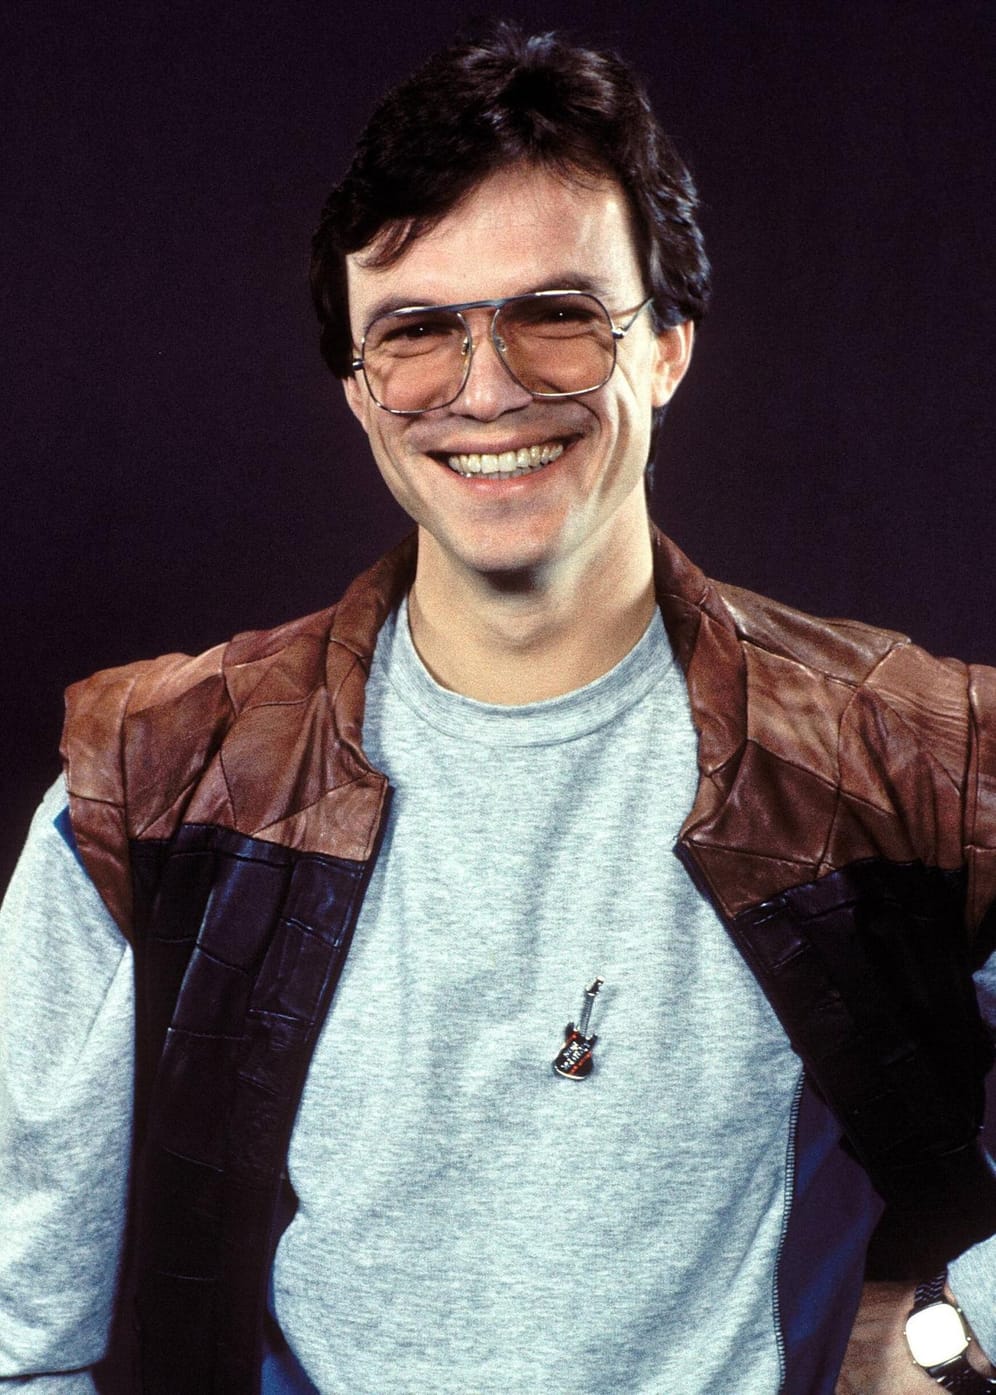 Entertainer Wolfgang Lippert: 1983 landete er mit "Erna kommt" einen Hit in der DDR. 1984 bekam er seine eigene Unterhaltungssendung "Meine erste Show", später moderierte er auch "Glück muß man haben". 1989 wurde er zum "Fernsehliebling" gewählt.